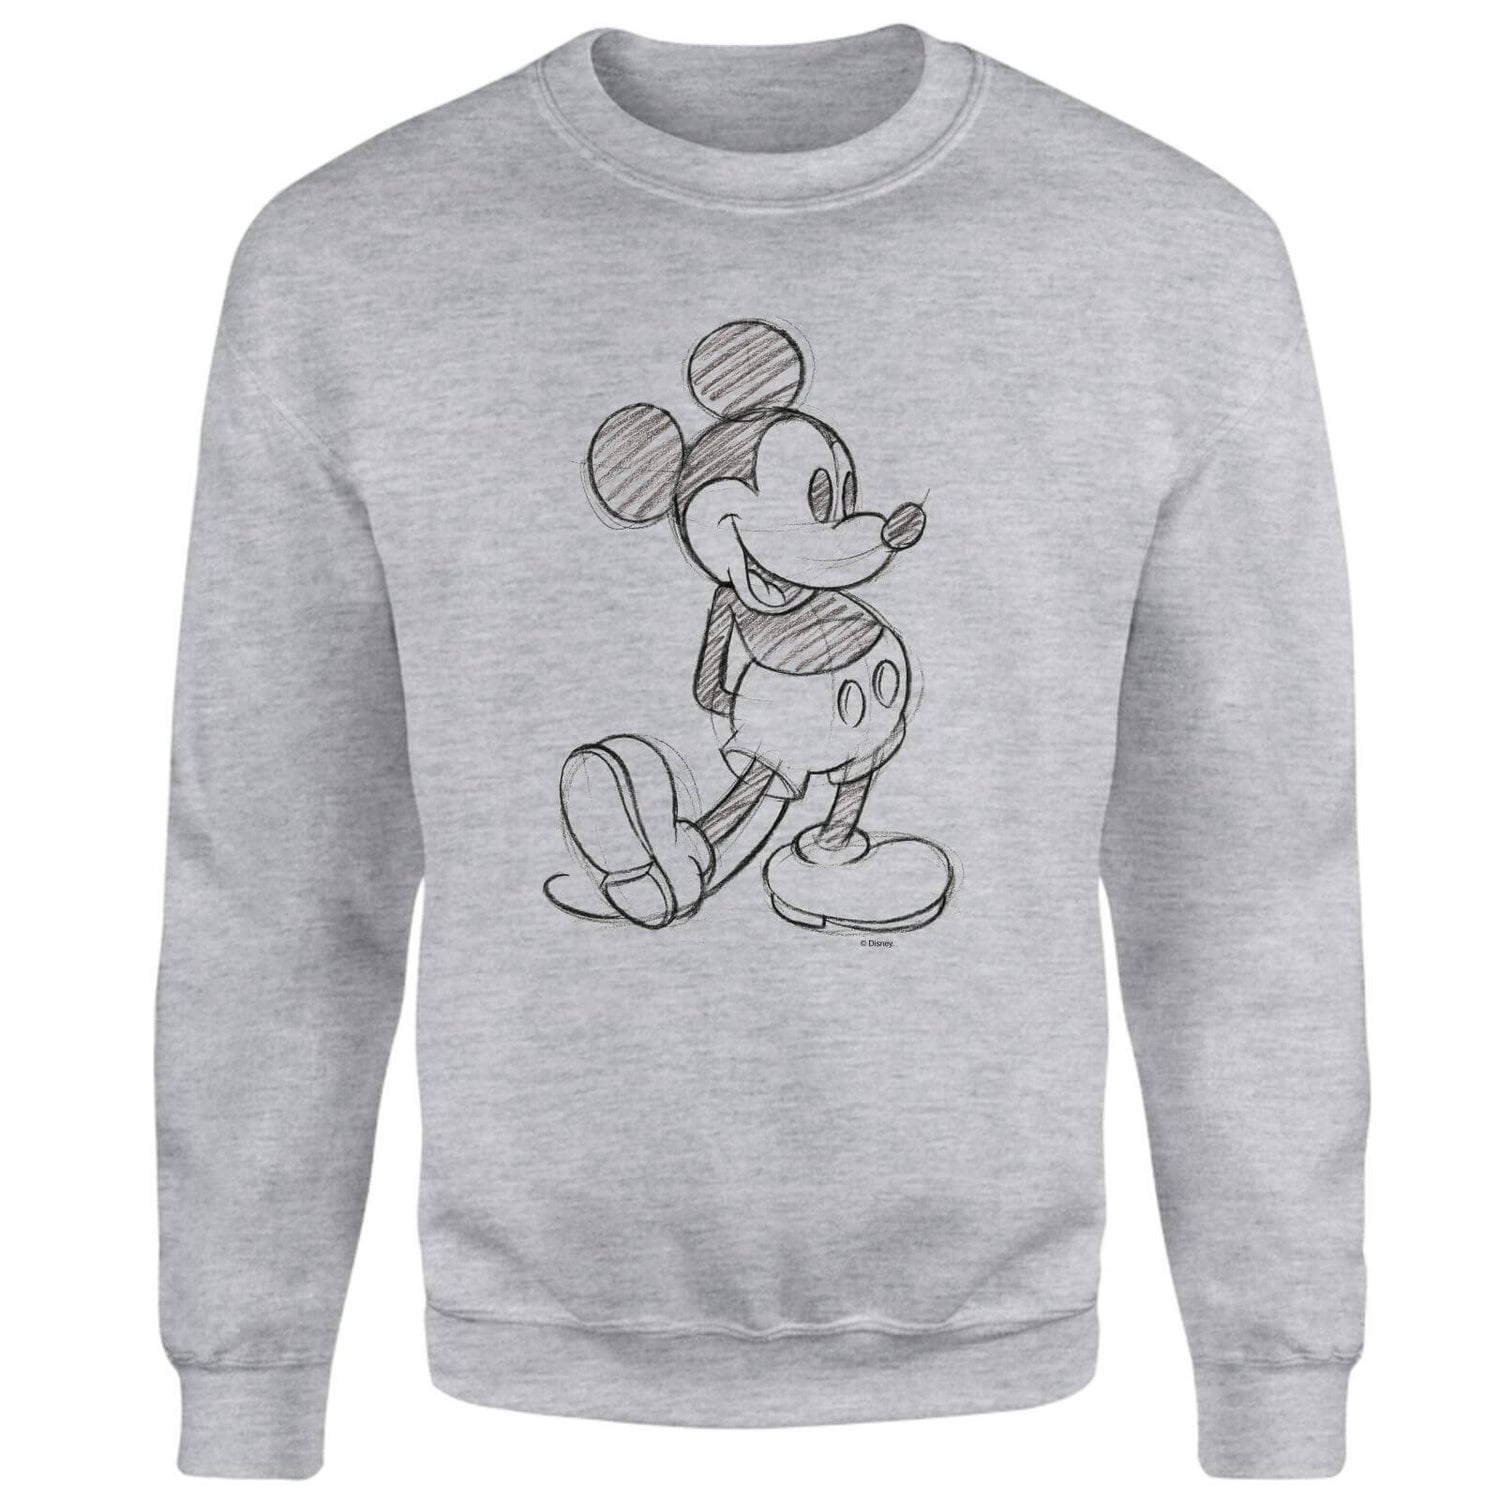 Disney Mickey Mouse Sketch Sweatshirt - Grey